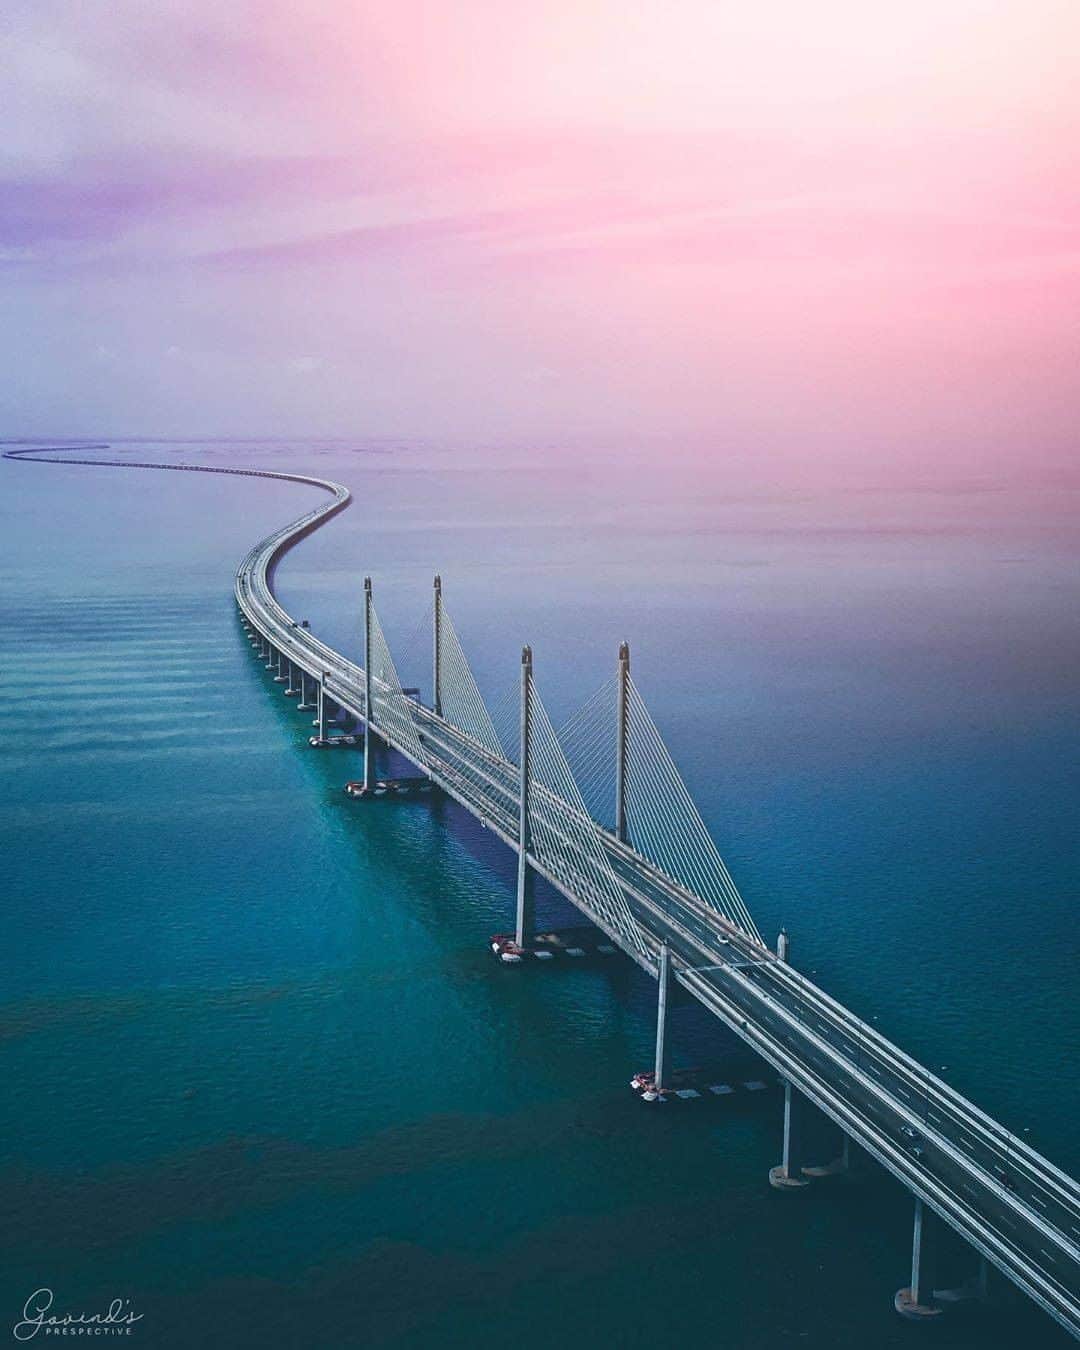 Bridges in Malaysia - Sultan Abdul Halim Muadzam Shah Bridge